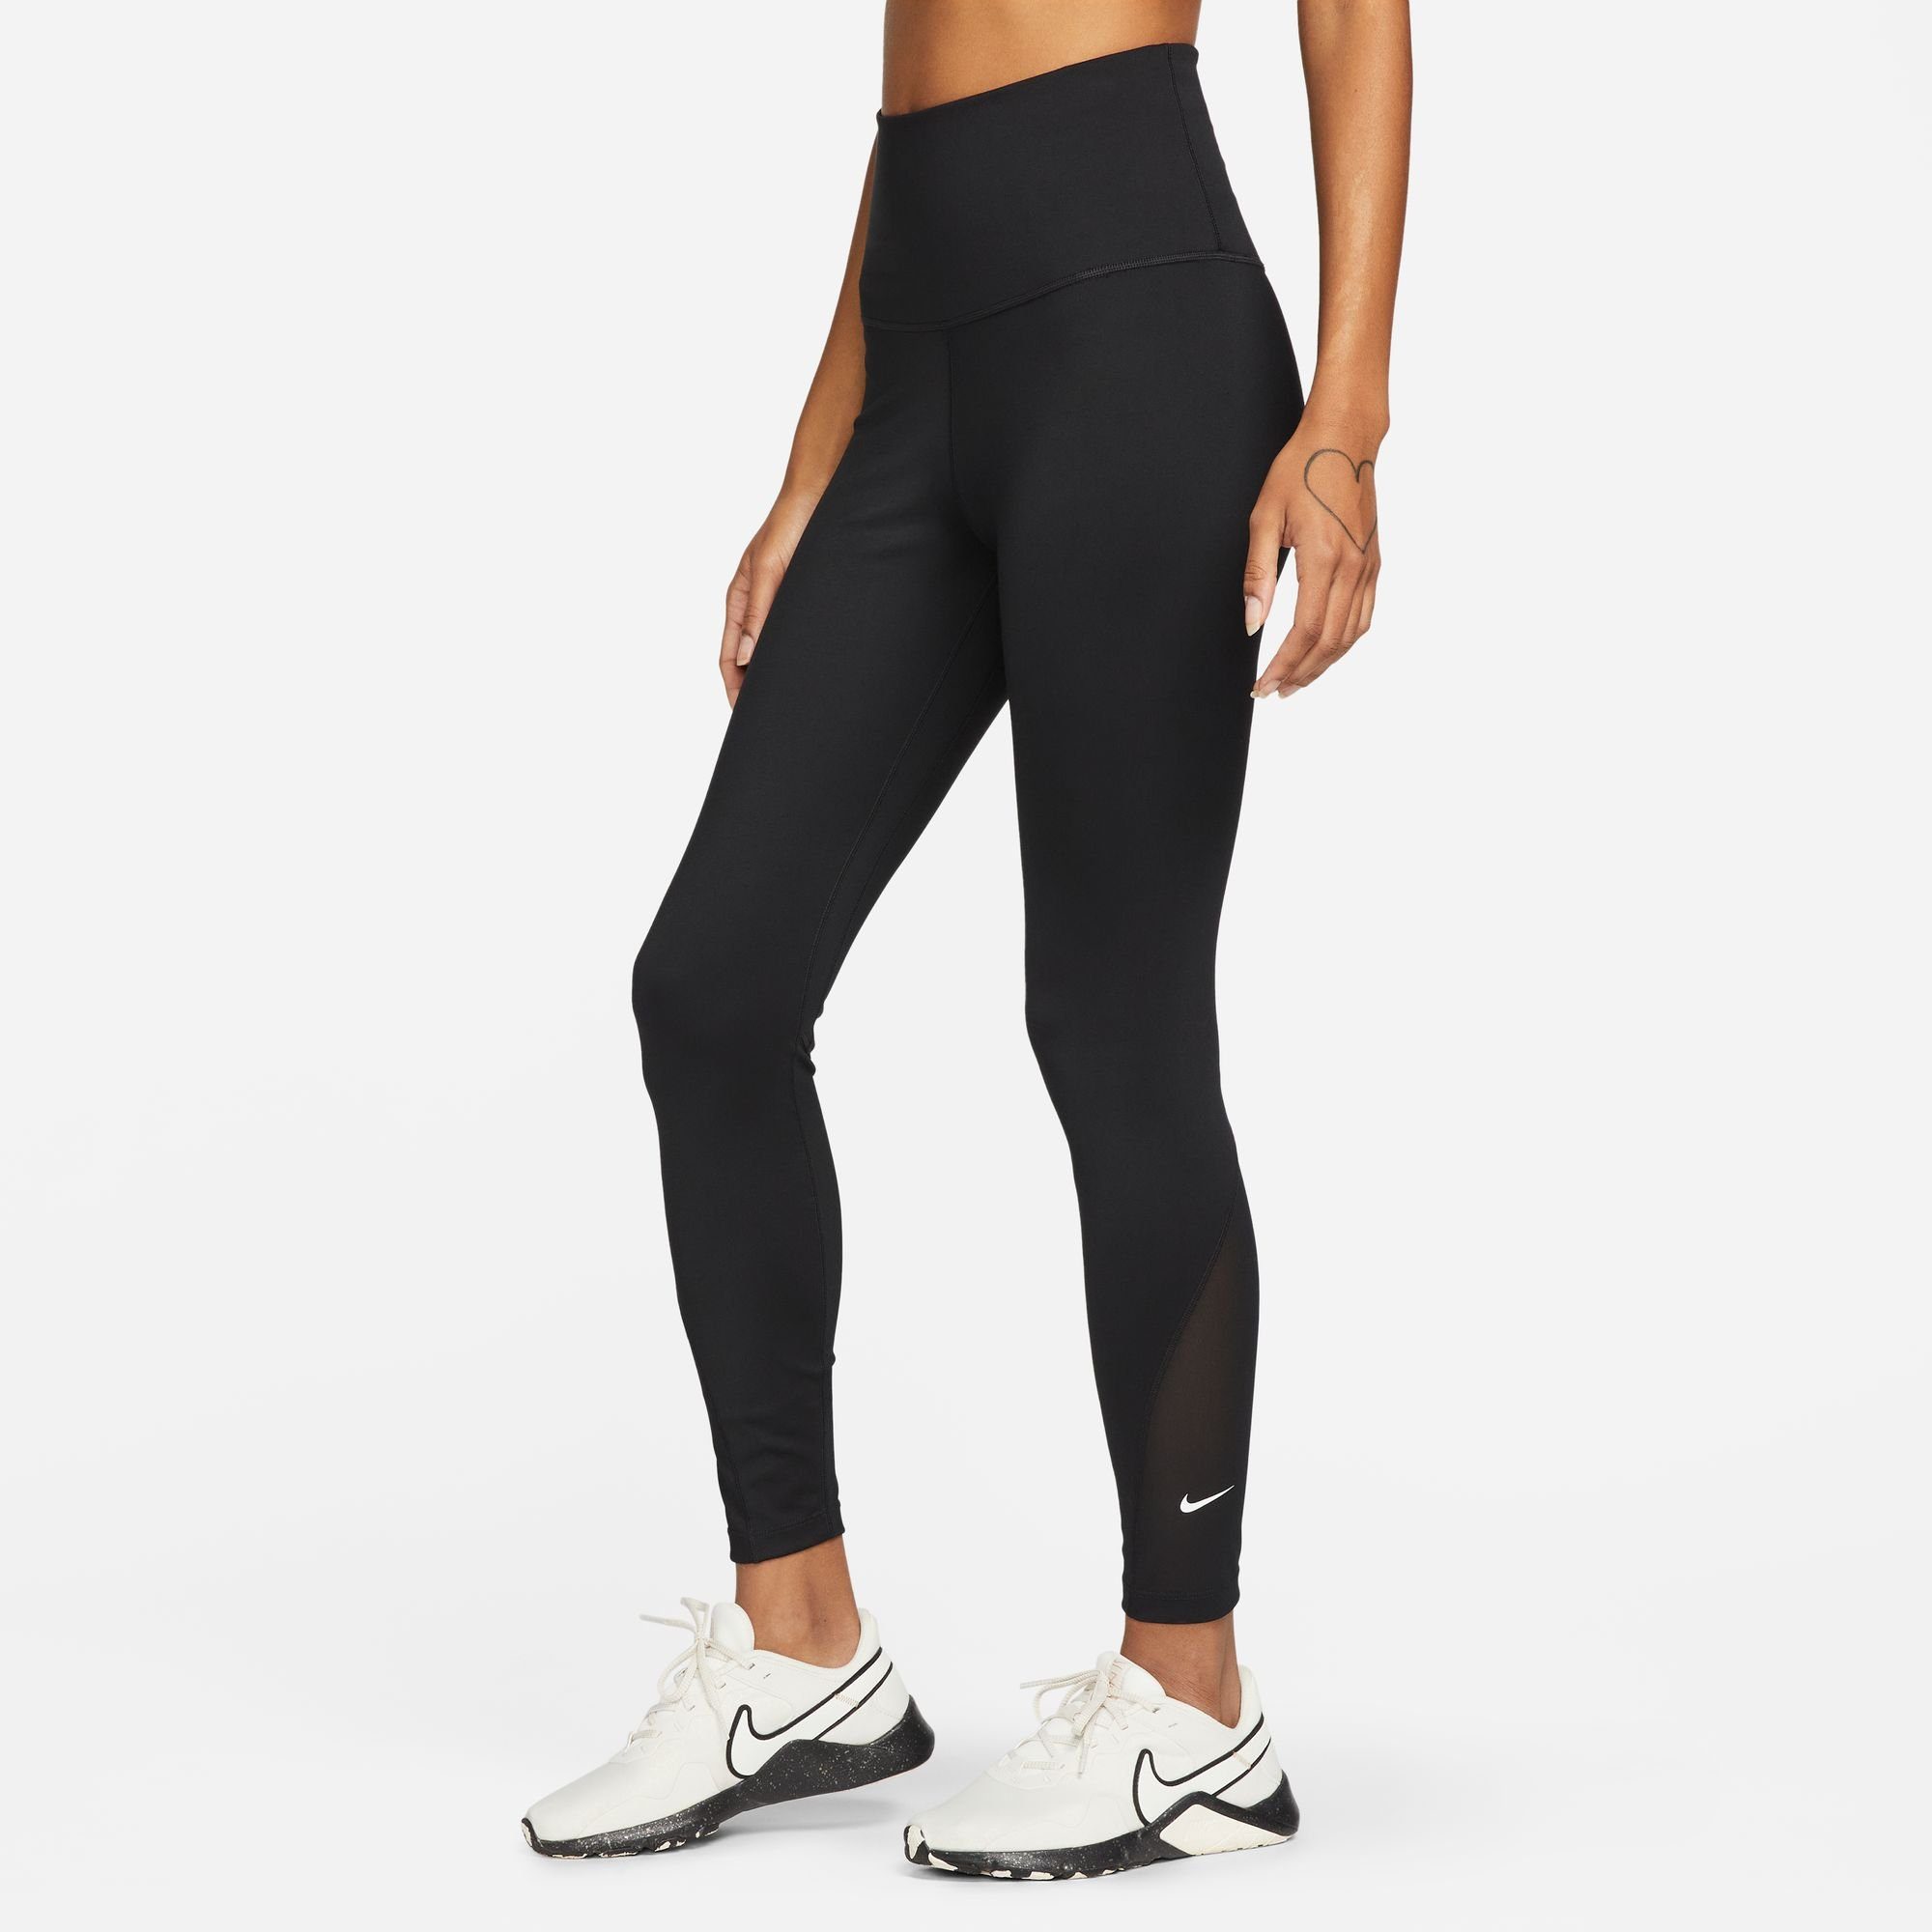 LEGGINGS BLACK/WHITE ONE Nike Trainingstights WOMEN'S / HIGH-WAISTED